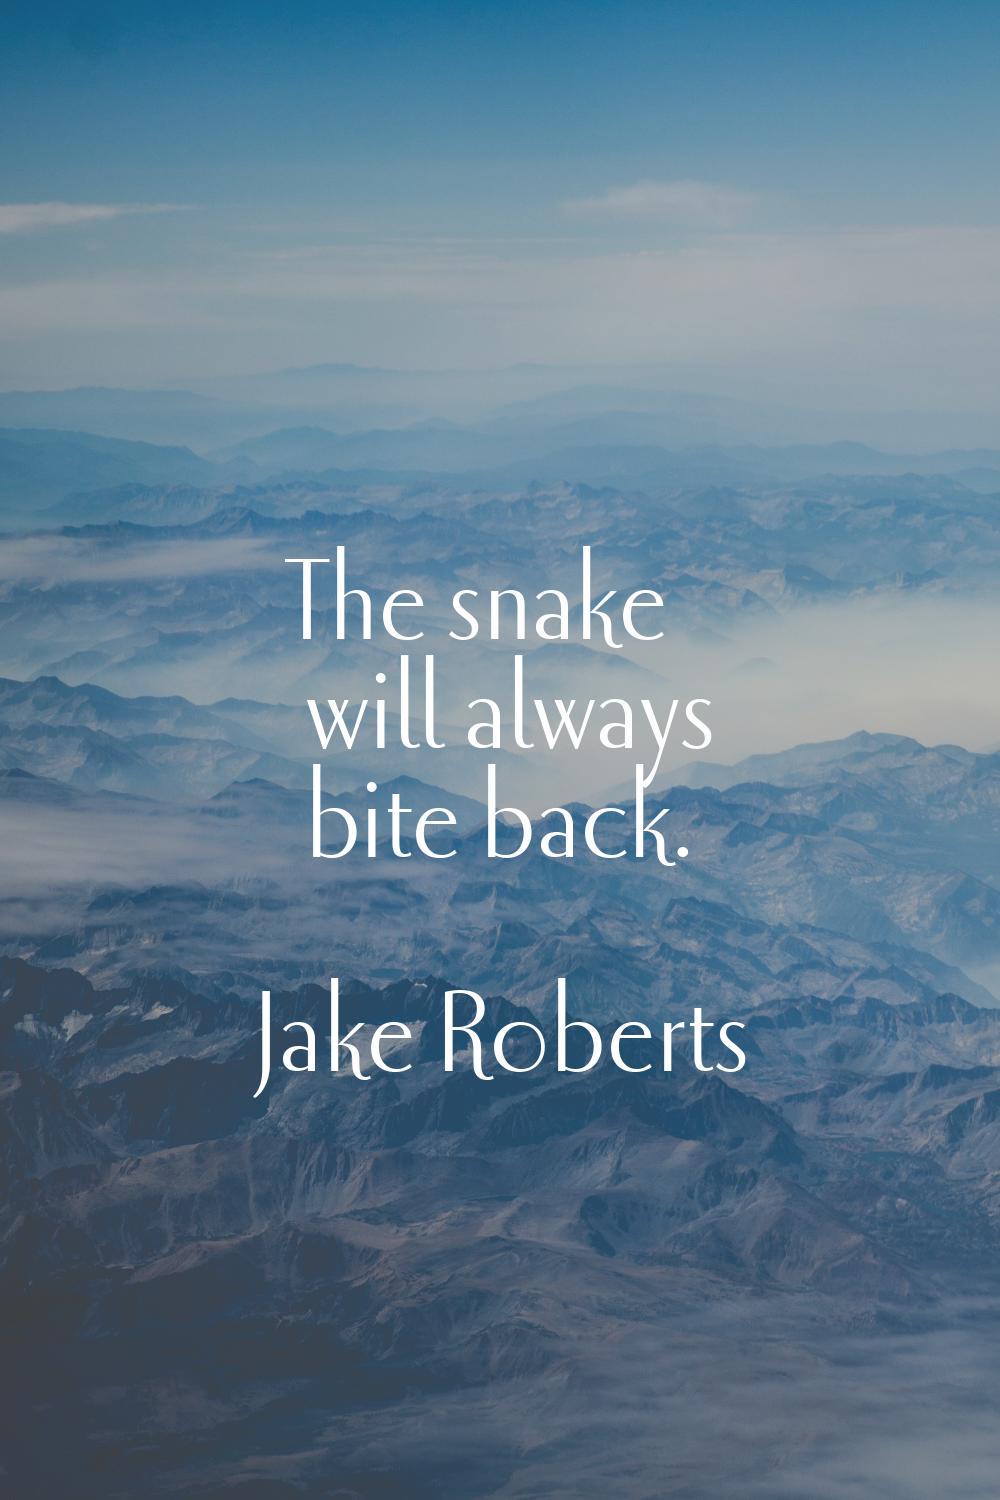 The snake will always bite back.